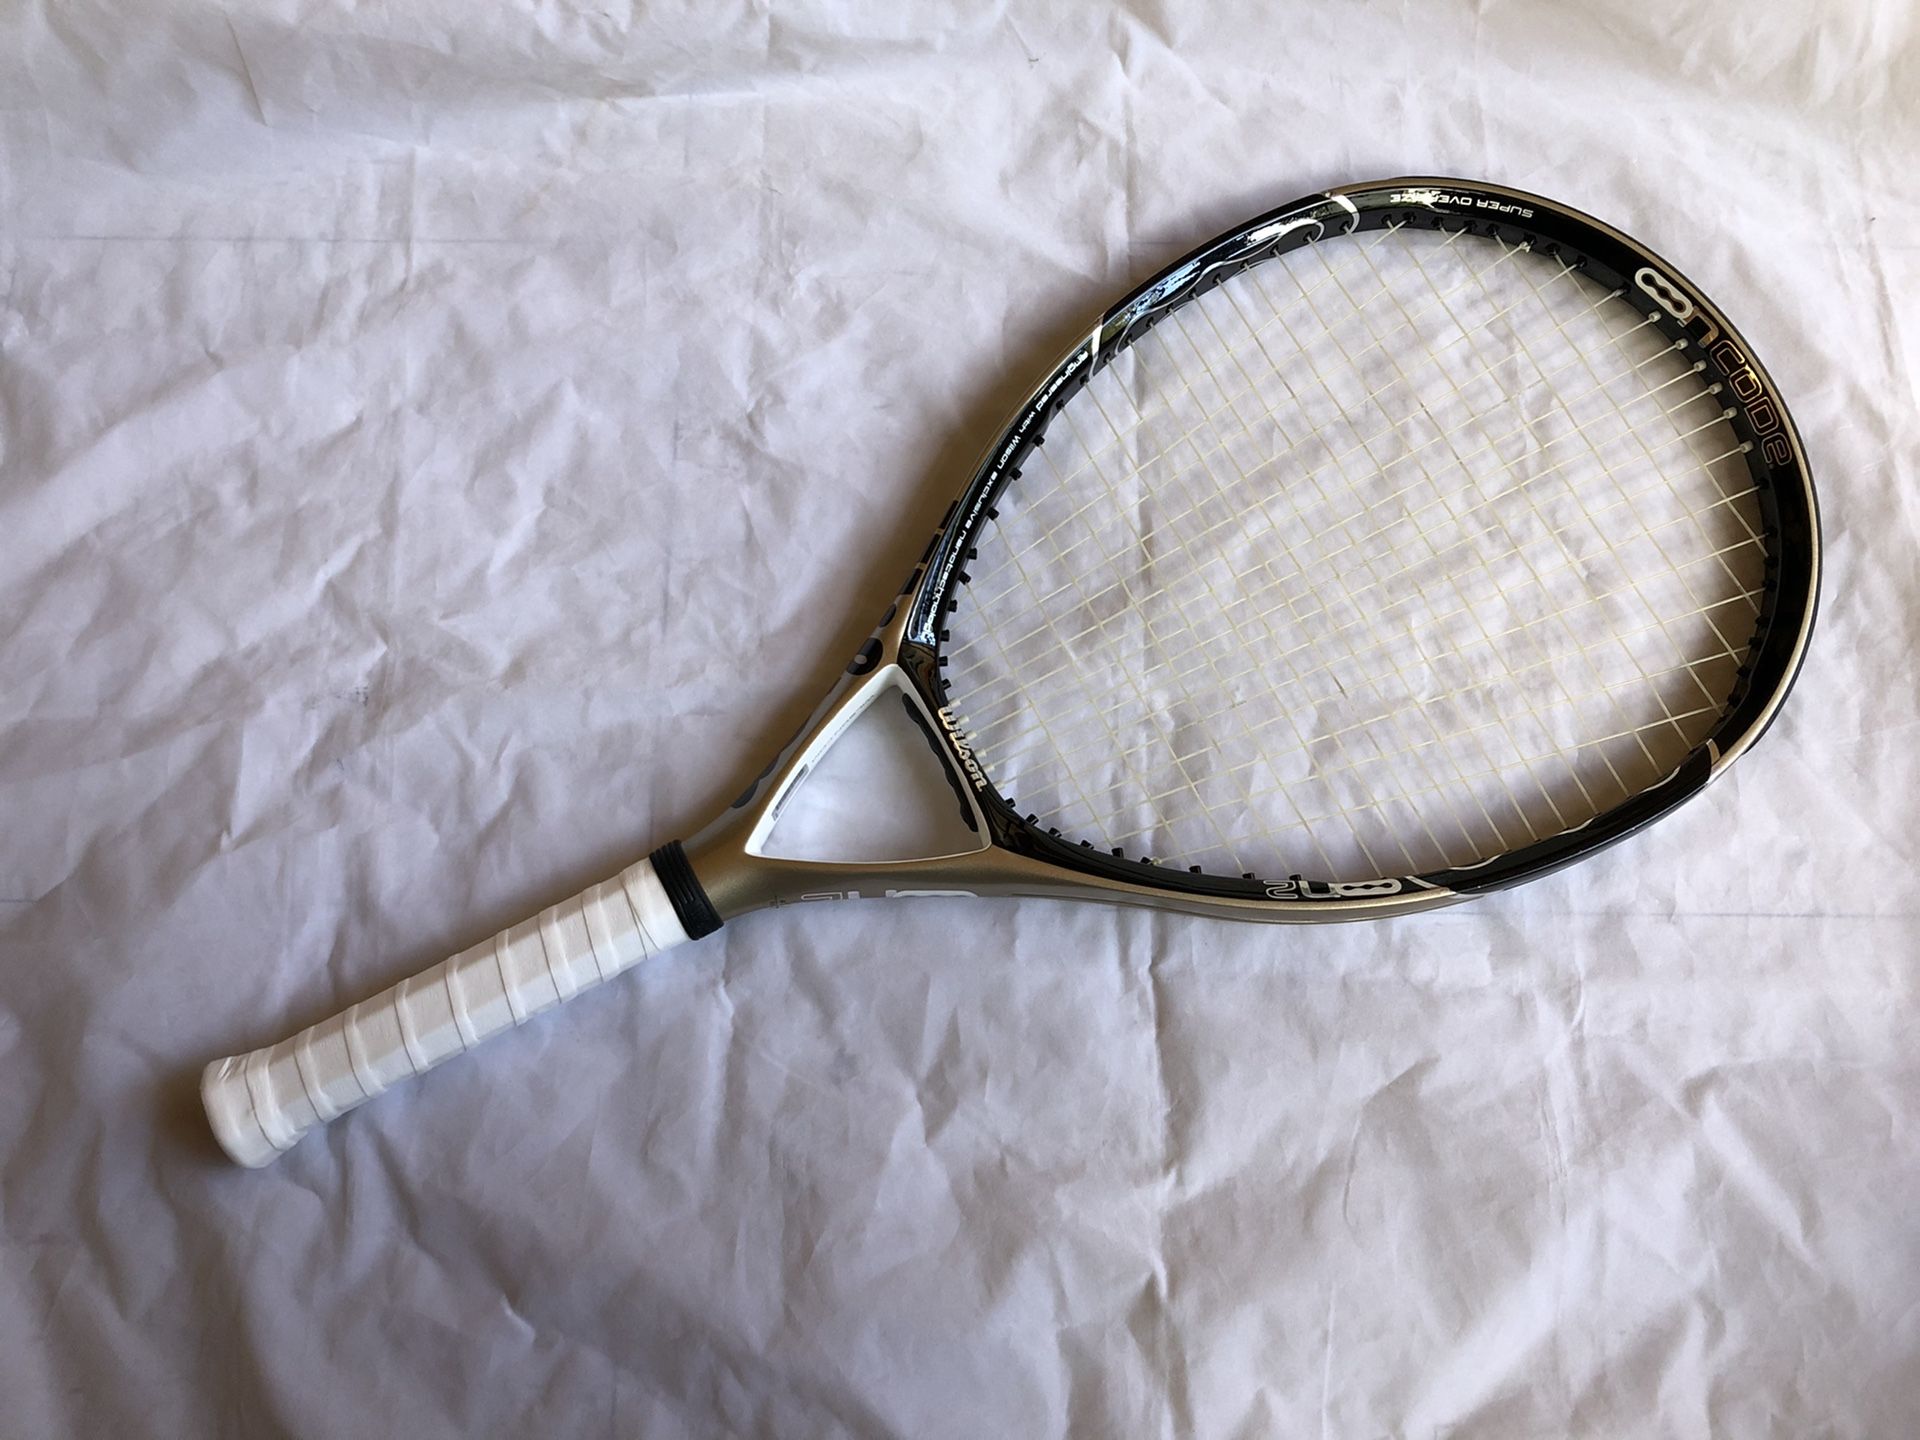 Wilson Ncode N2 Oversize Tennis Racquet / Racket. - PRICE FIRM